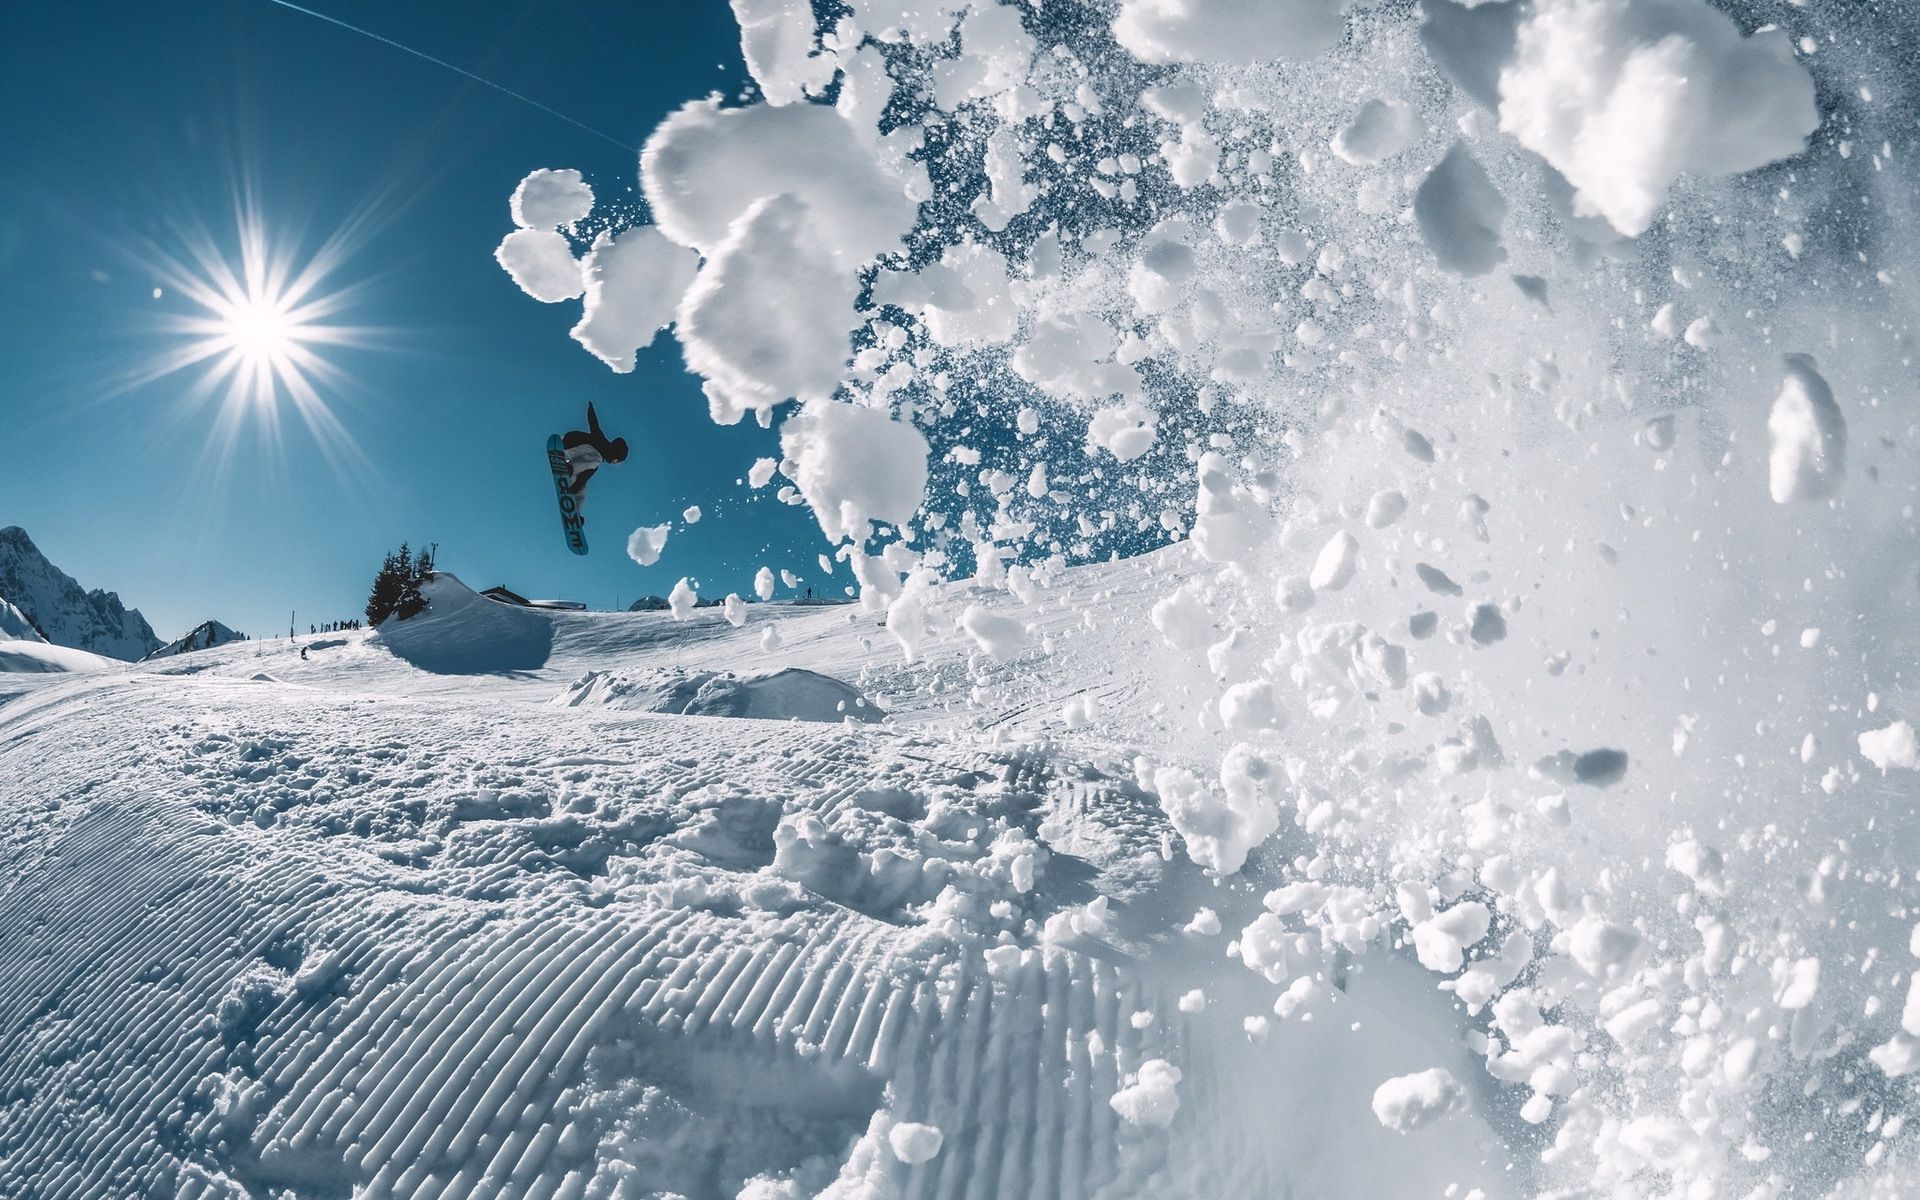 Snowboarding Widescreen Wallpaper -